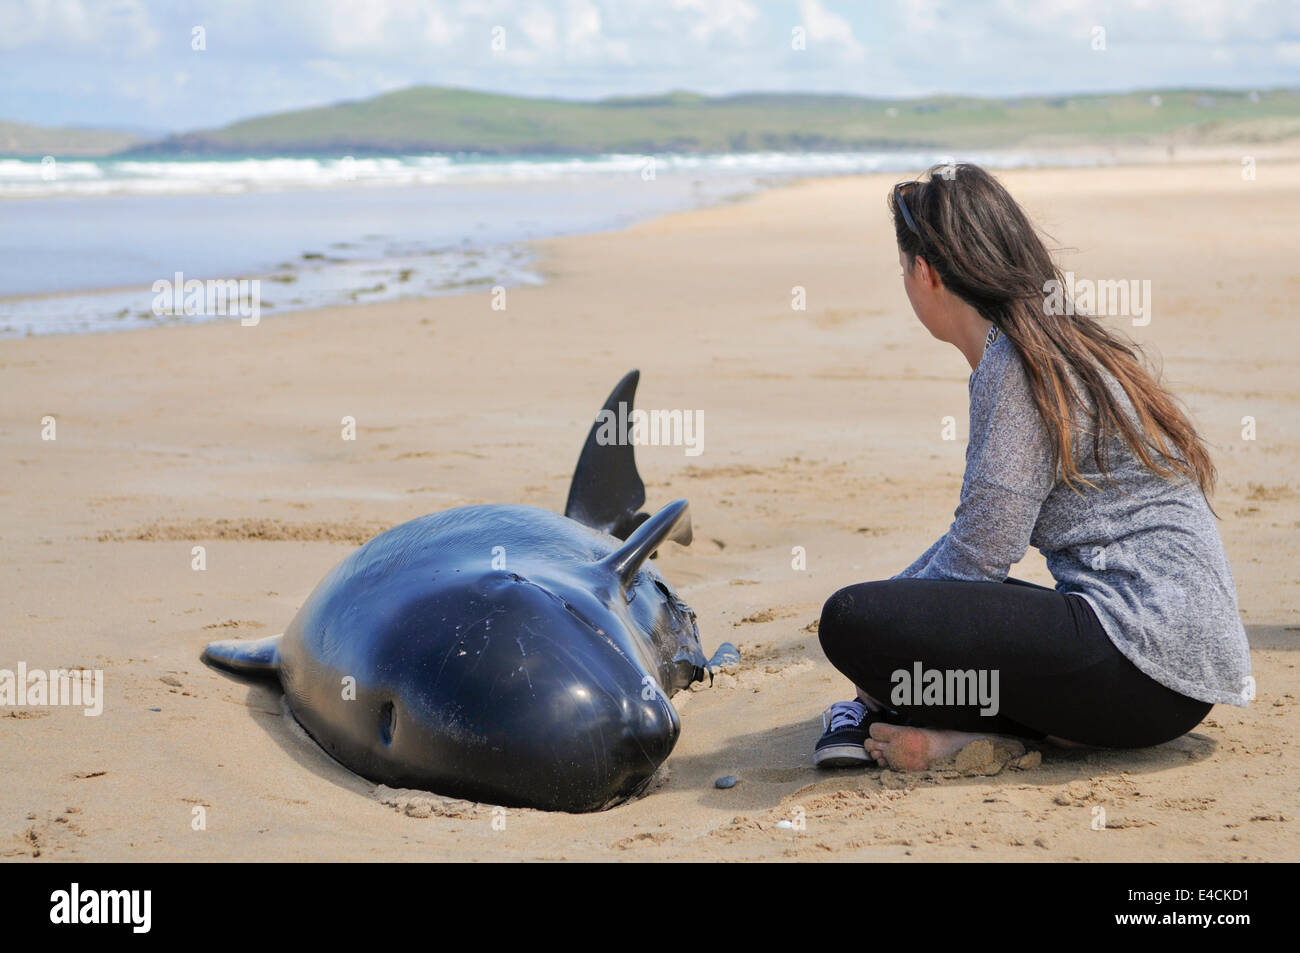 Strand Falcarragh, Donegal, Irlande. 8 Sep 2014 - Une jeune femme est assise à côté de pleurer l'un des douze baleines pilotes avant qu'il est mort après l'échouage délibérément. Le pod a initialement été secouru, mais échouer une deuxième fois. Crédit : Stephen Barnes/Alamy Live News Banque D'Images